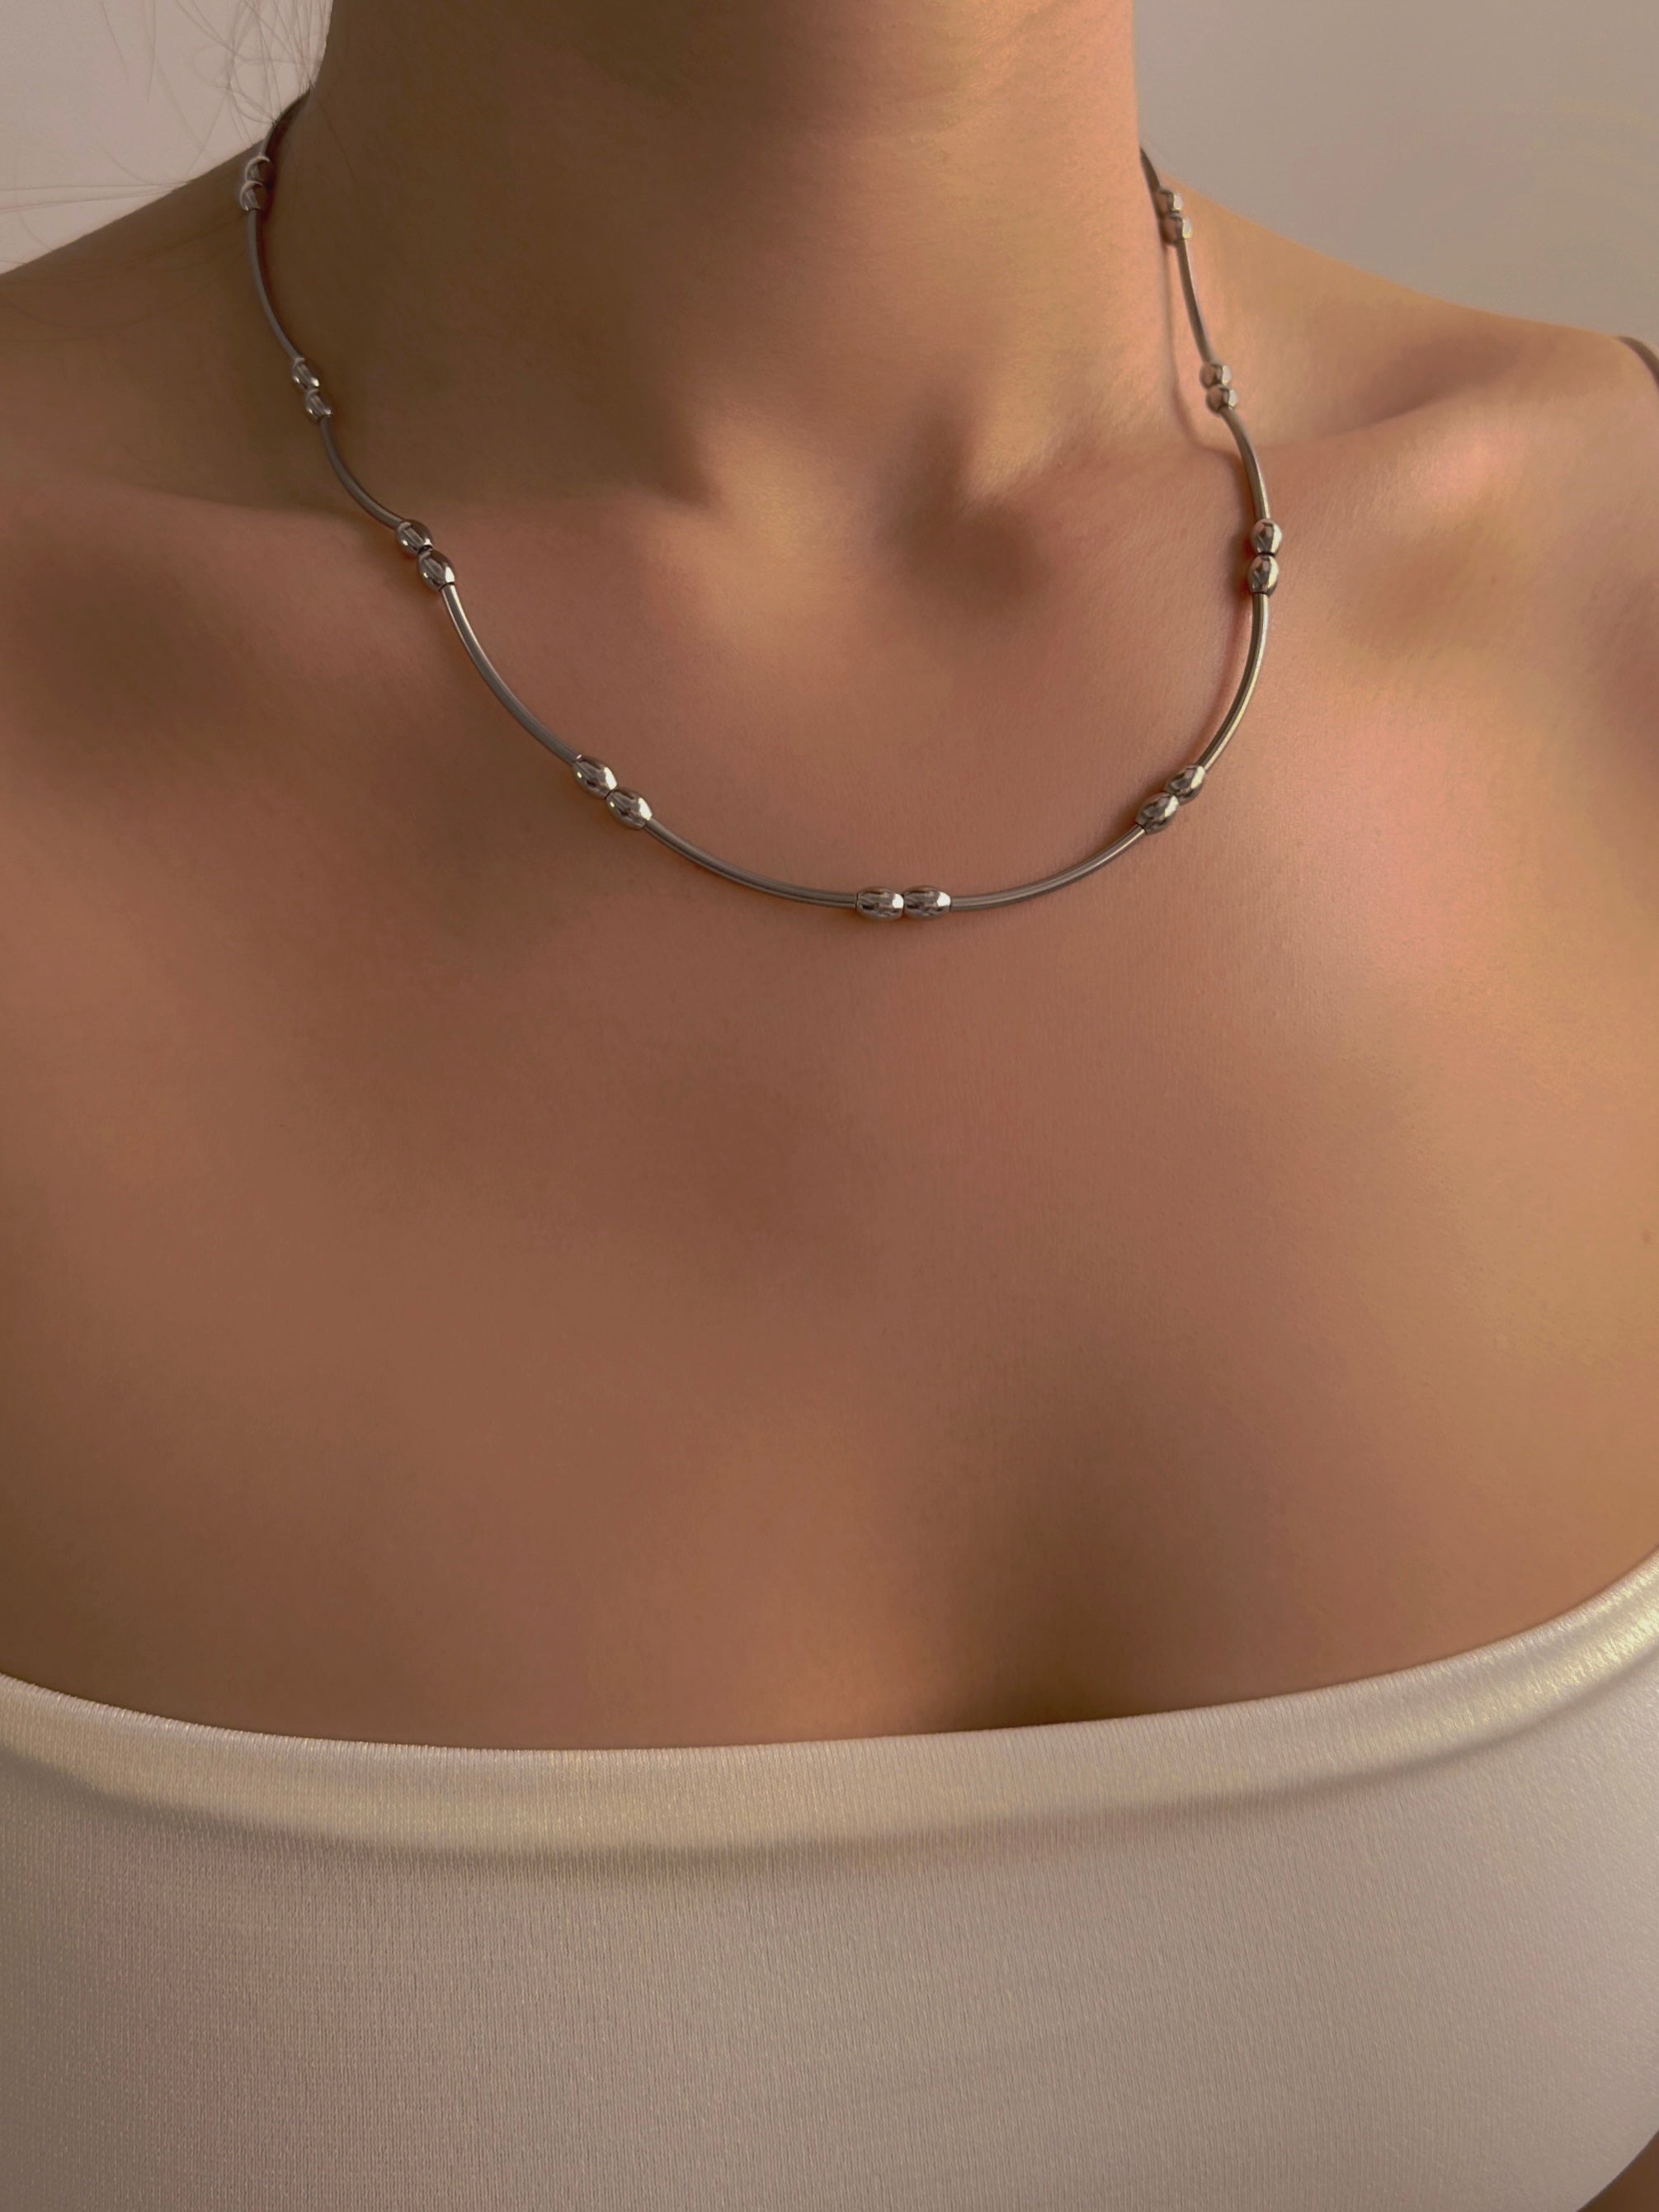 2 (美) pipe necklace